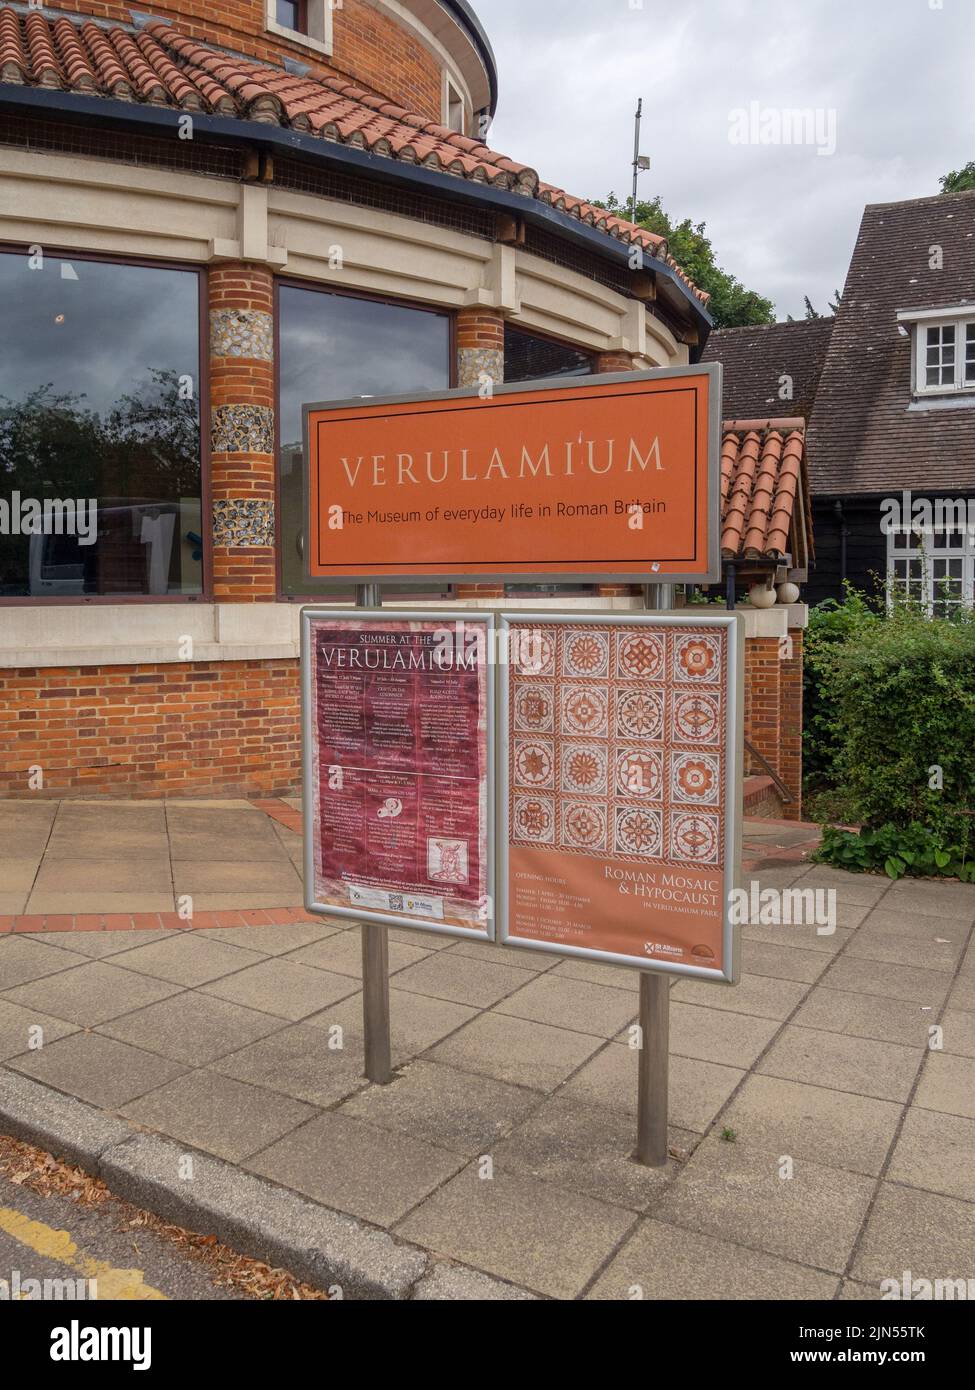 Verulamium Museum, St Albans, Hertfordshire, Regno Unito; un'attrazione turistica che esplora la vita romana in Gran Bretagna Foto Stock